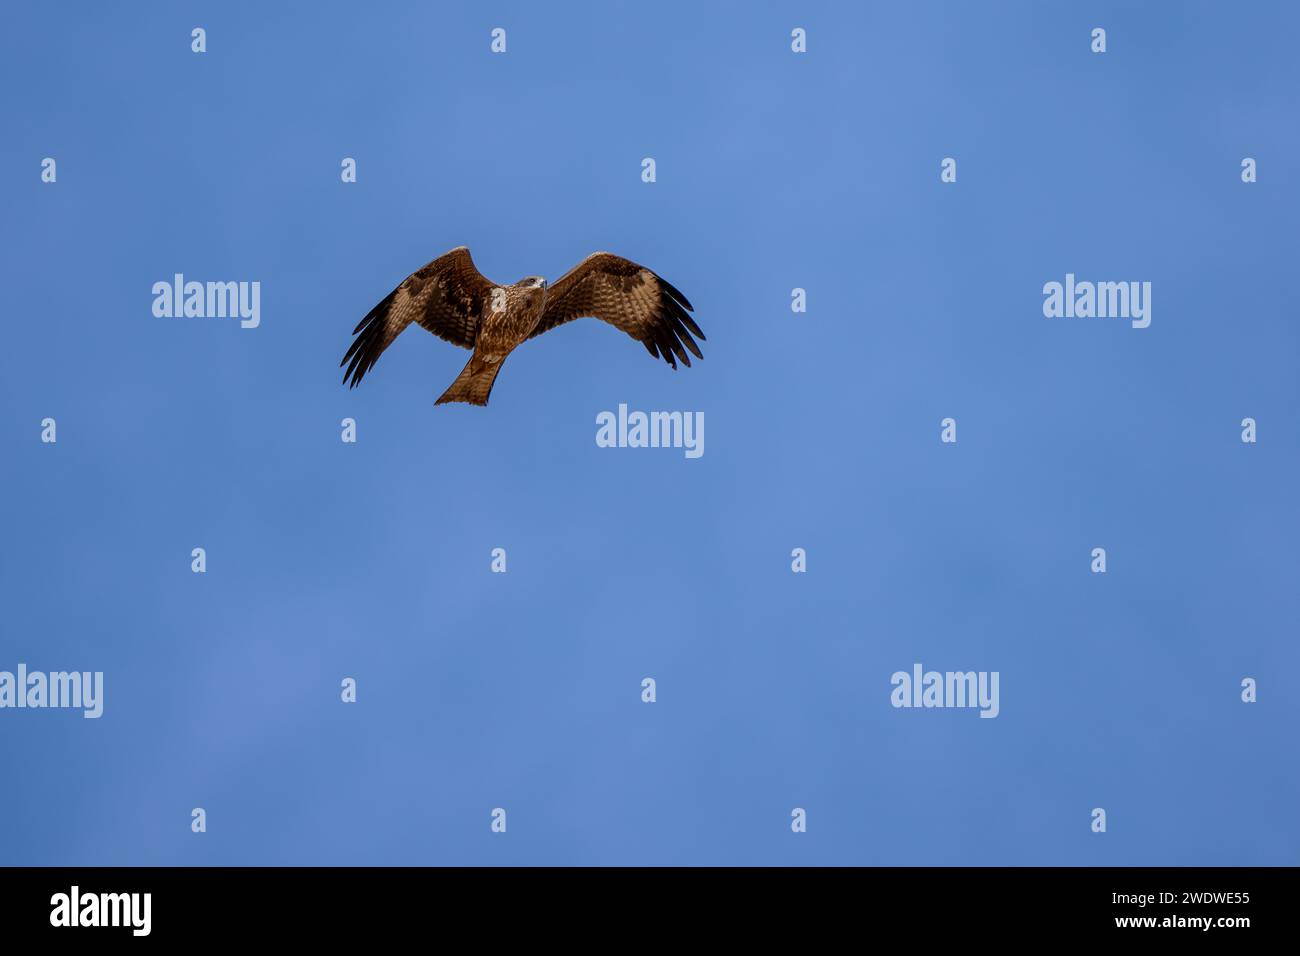 Cerf-volant noir (Milvus migrans) en vol avec un fond de ciel bleu photographié en Israël en décembre le cerf-volant noir (Milvus migrans) est un cerf-volant de taille moyenne Banque D'Images